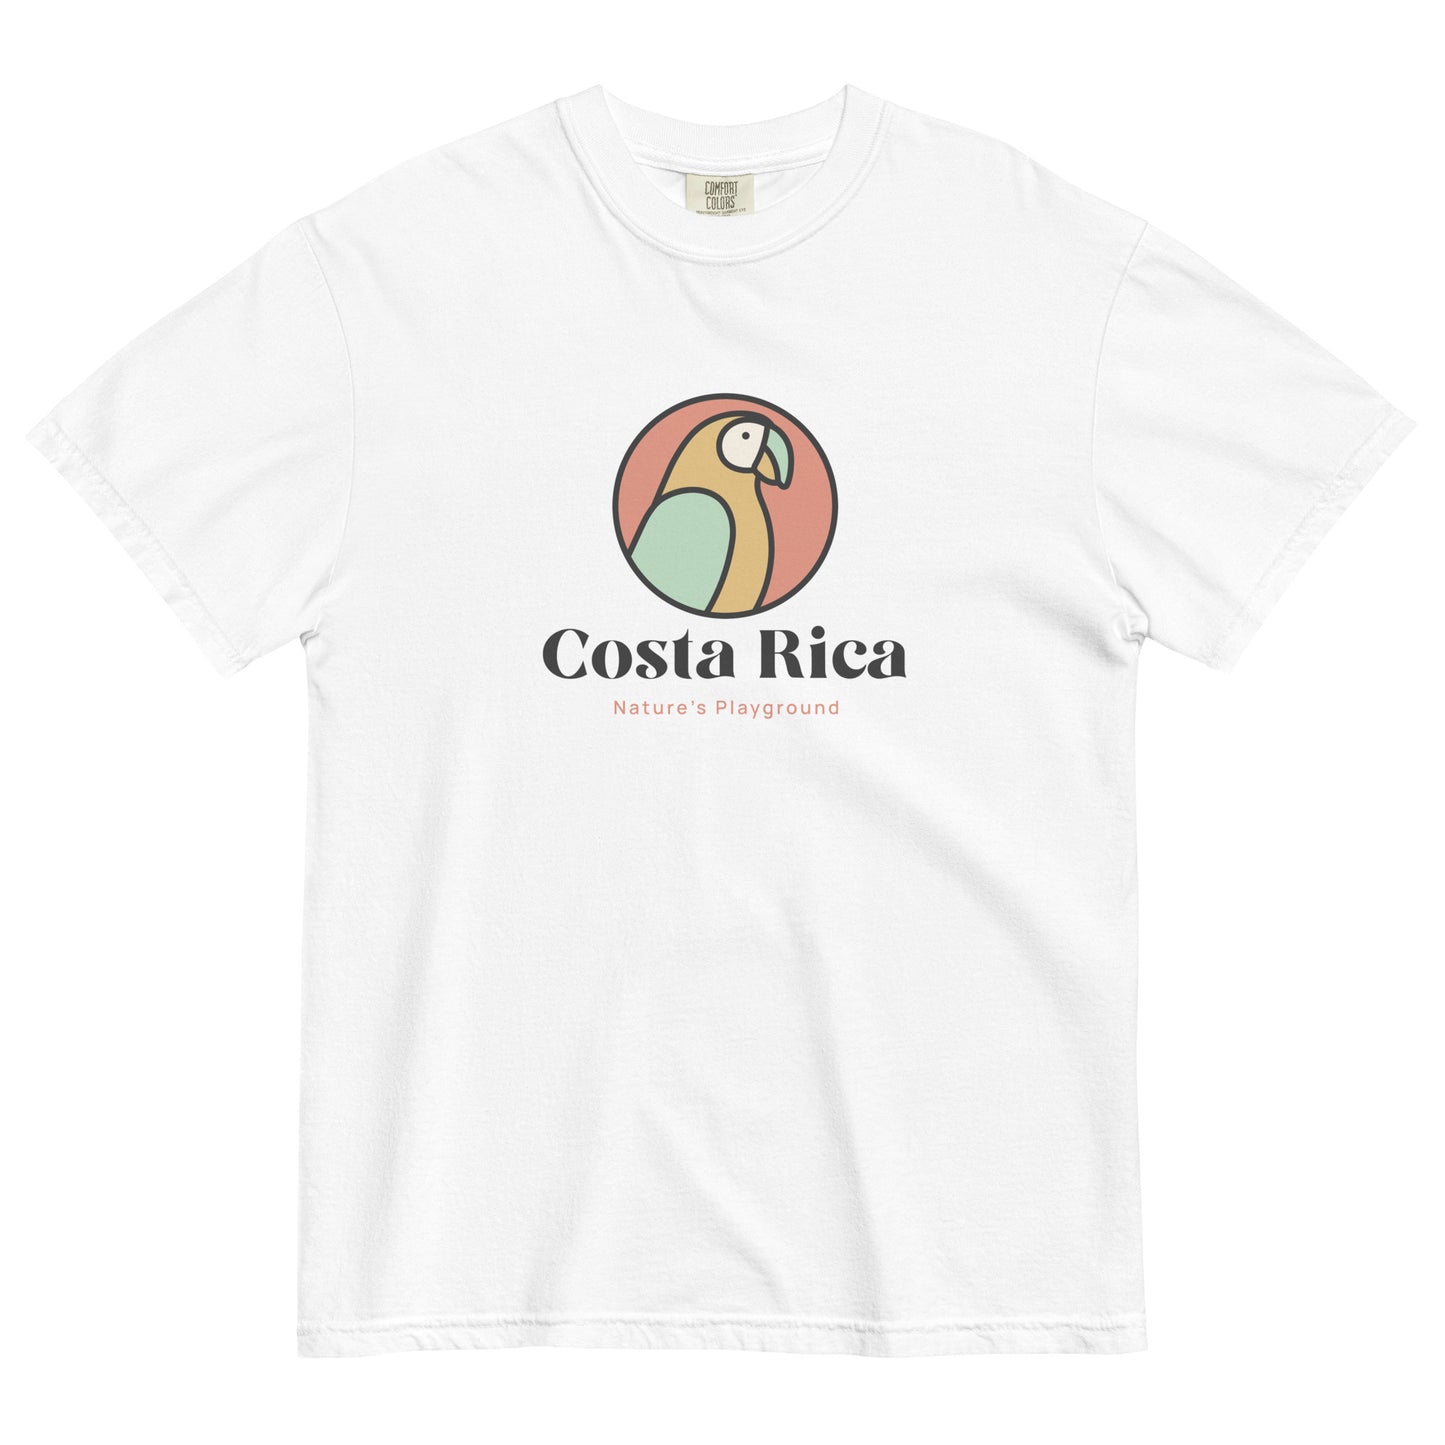 Costa Rica Nature's Playground t-shirt - Unisex